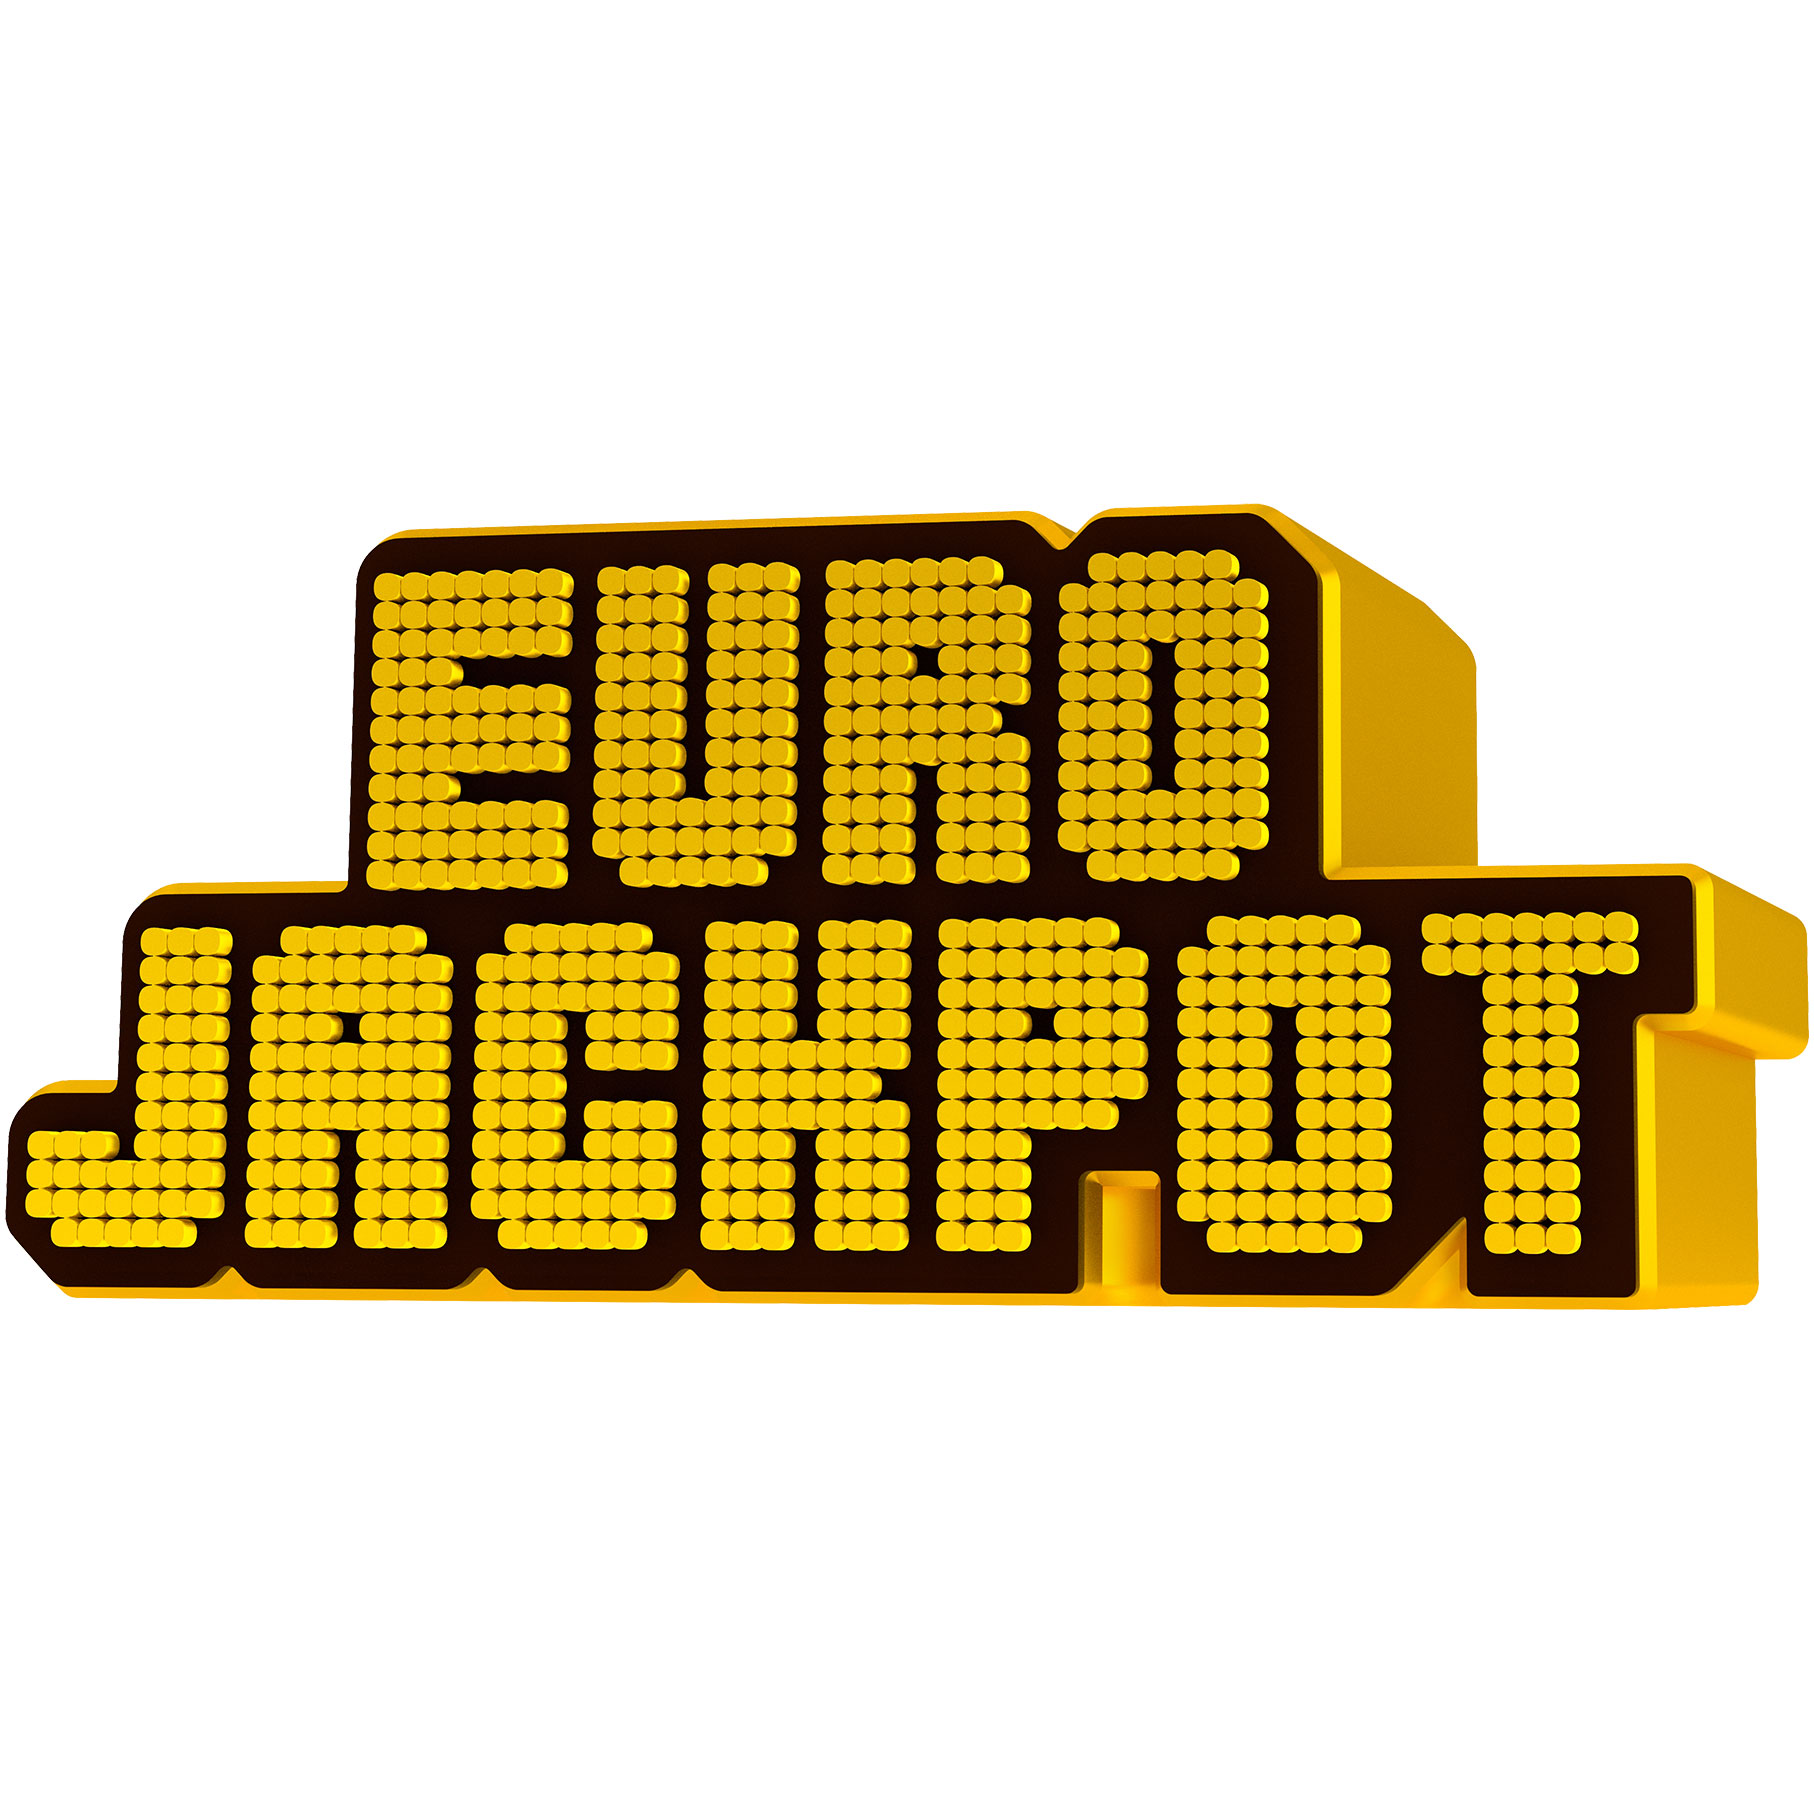 Uitslag Eurojackpot